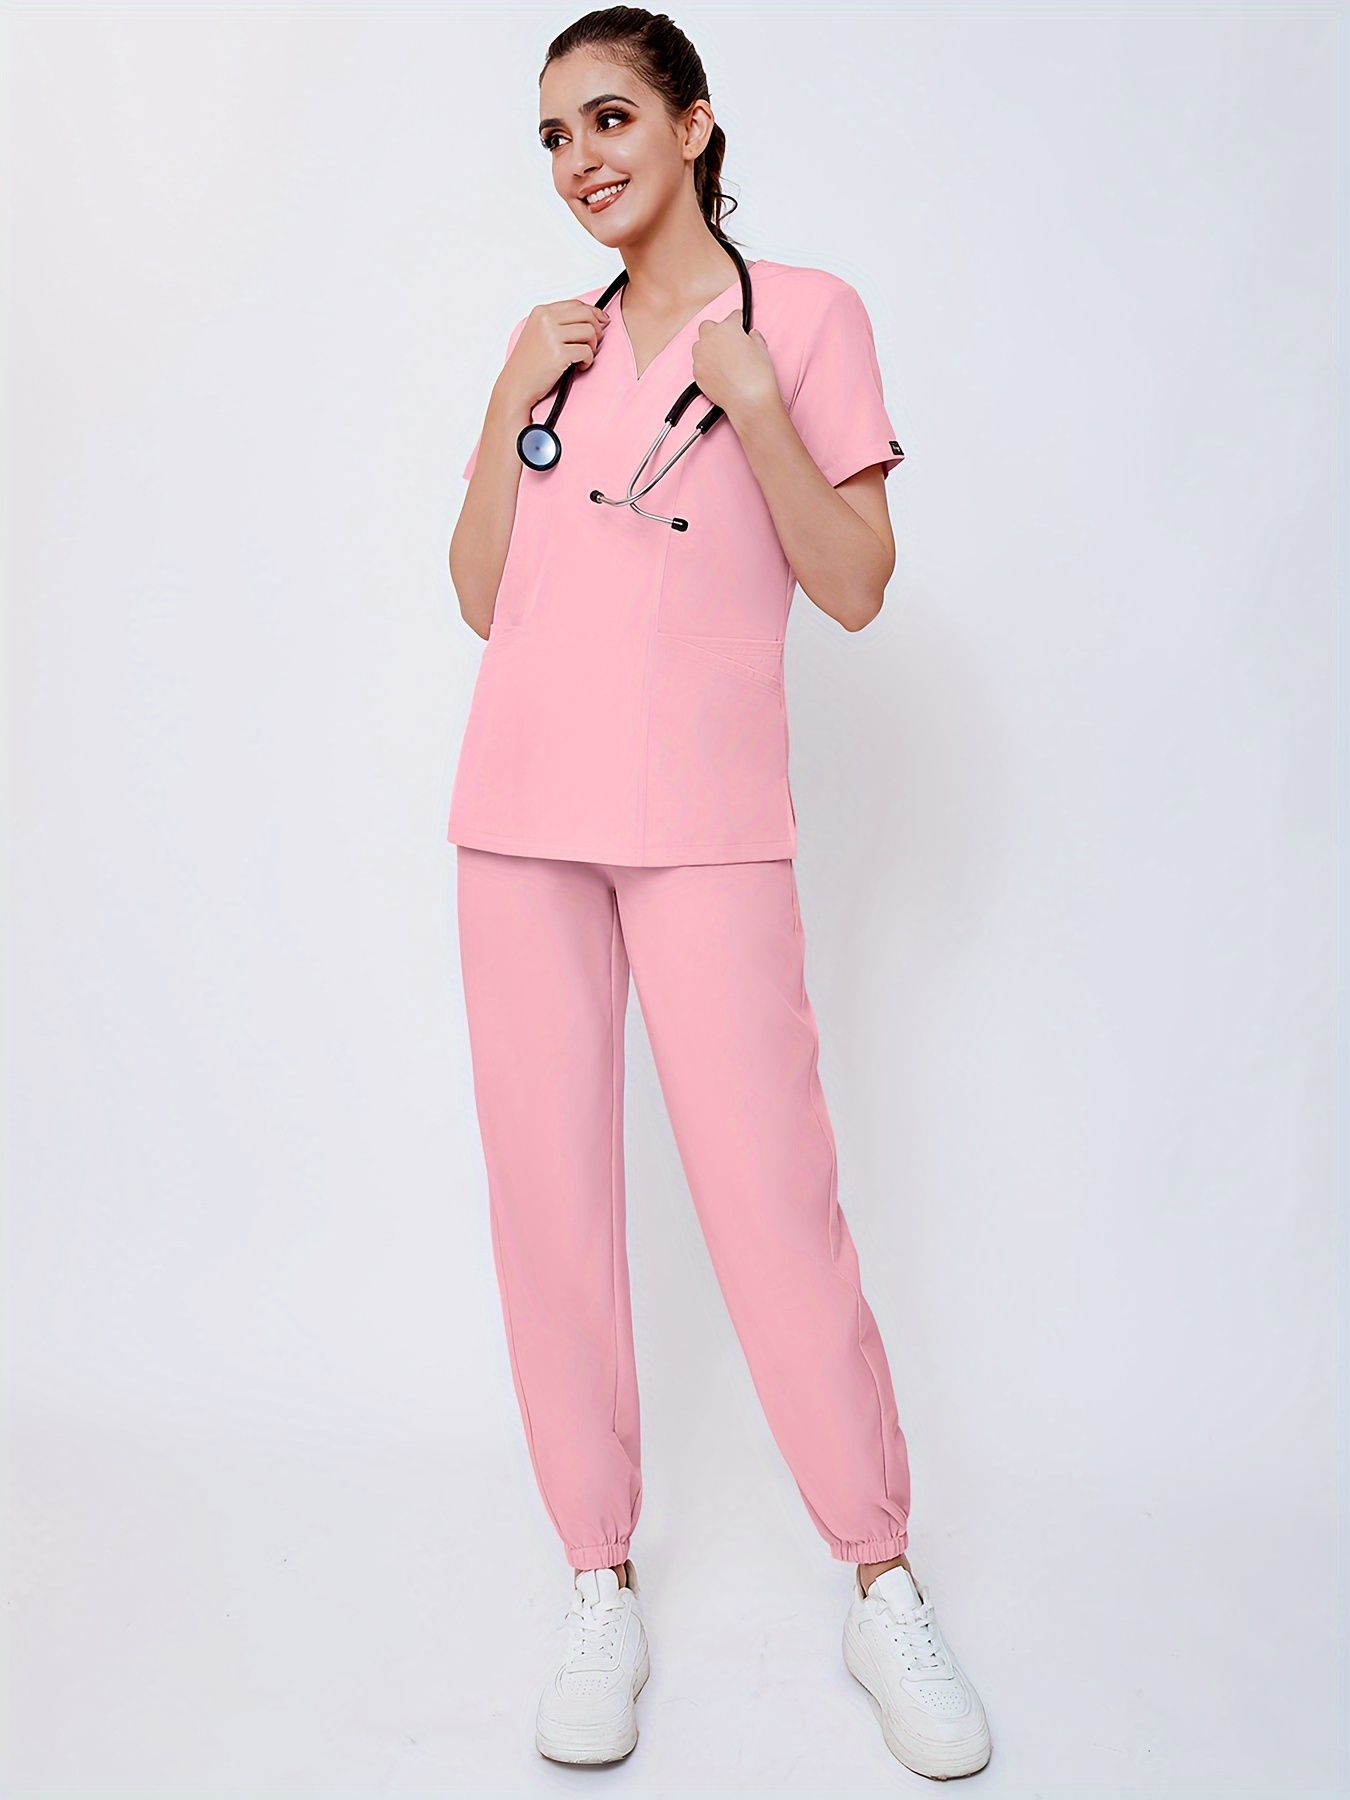 Conjunto de uniformes médicos para mujer, trajes de trabajo de